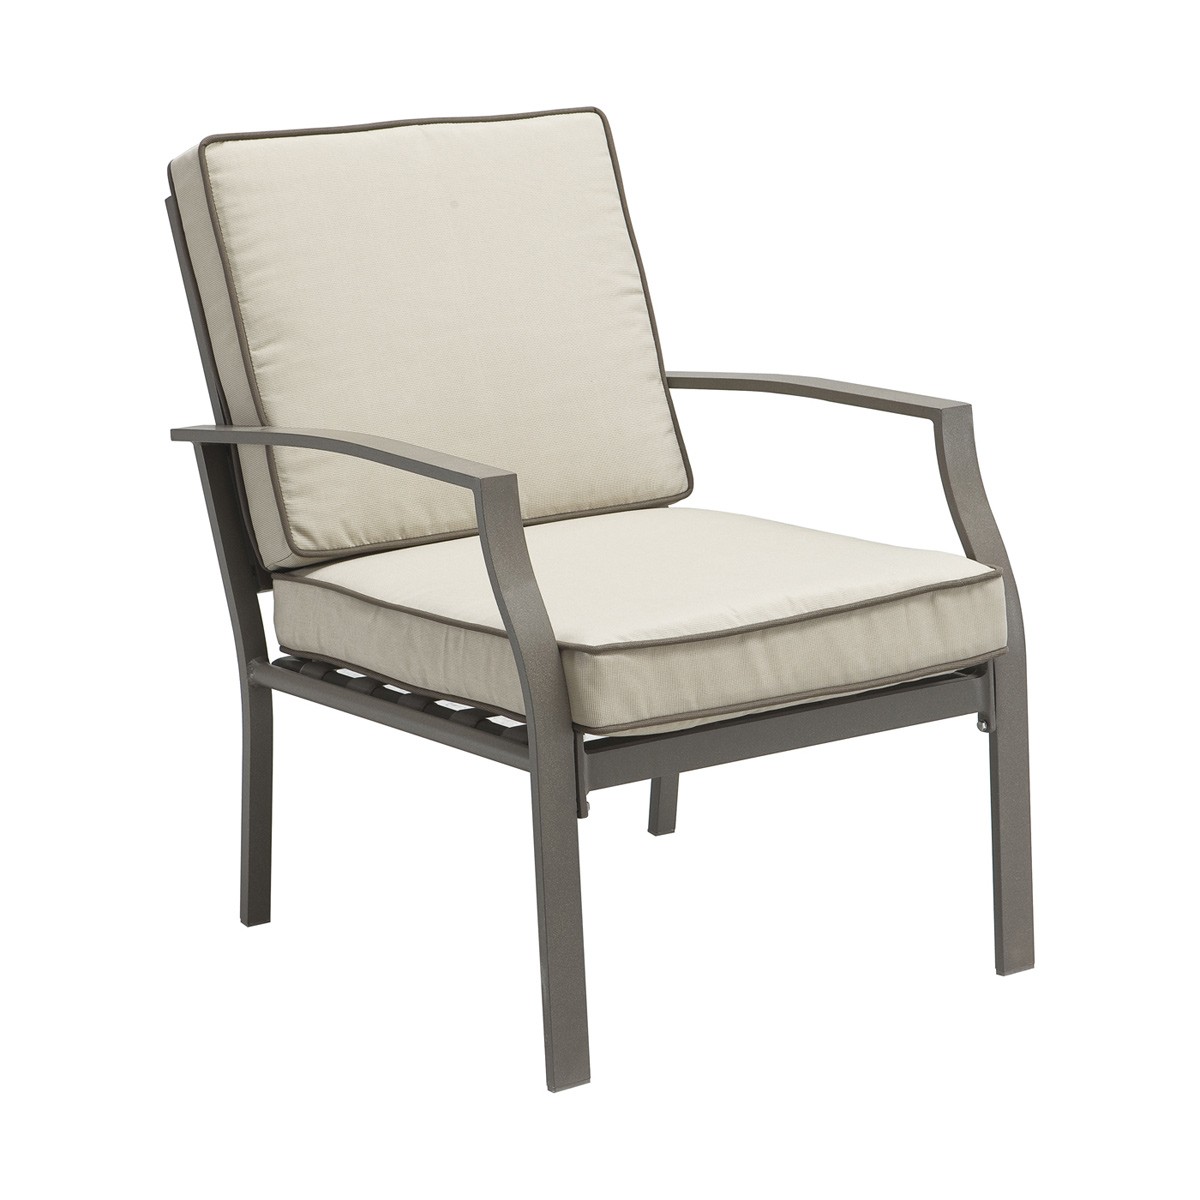 Zuo Modern Grand Beach Arm Chair - Beige